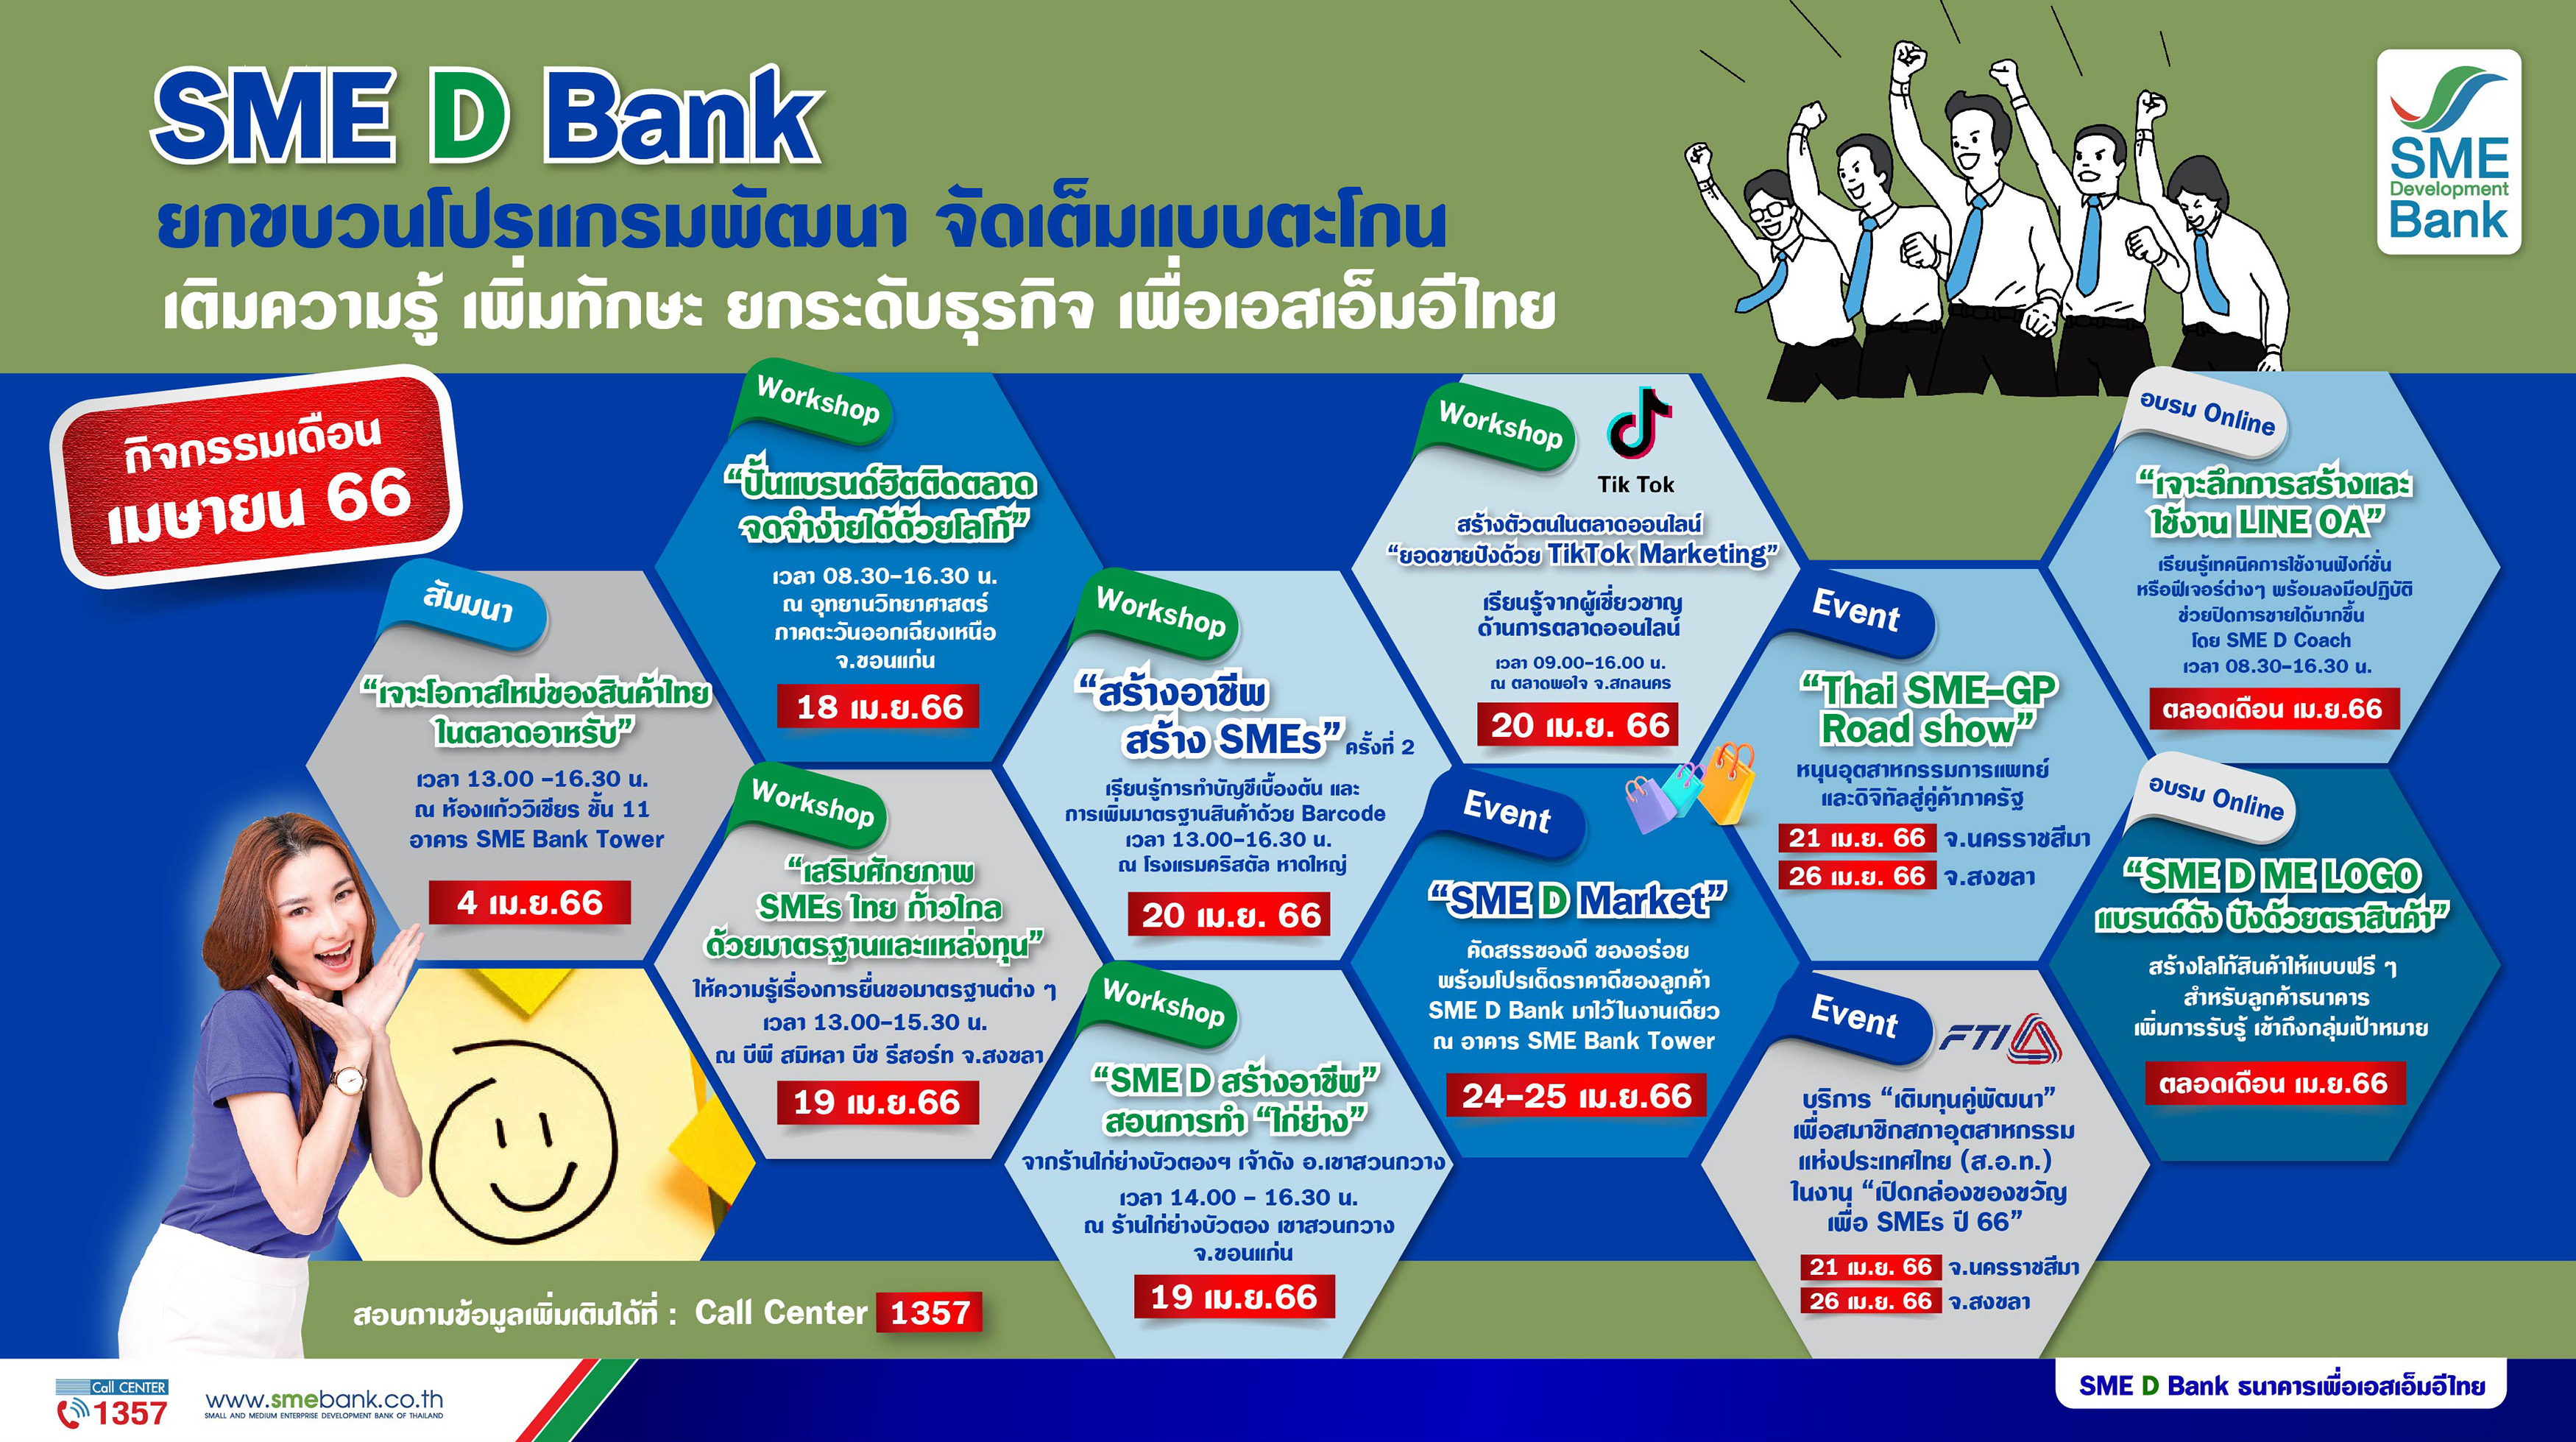 SME D Bank จัดเต็มแบบตะโกน 11 โปรแกรมพัฒนาเสริมแกร่งเอสเอ็มอีไทย ตลอดเดือน เม.ย.66